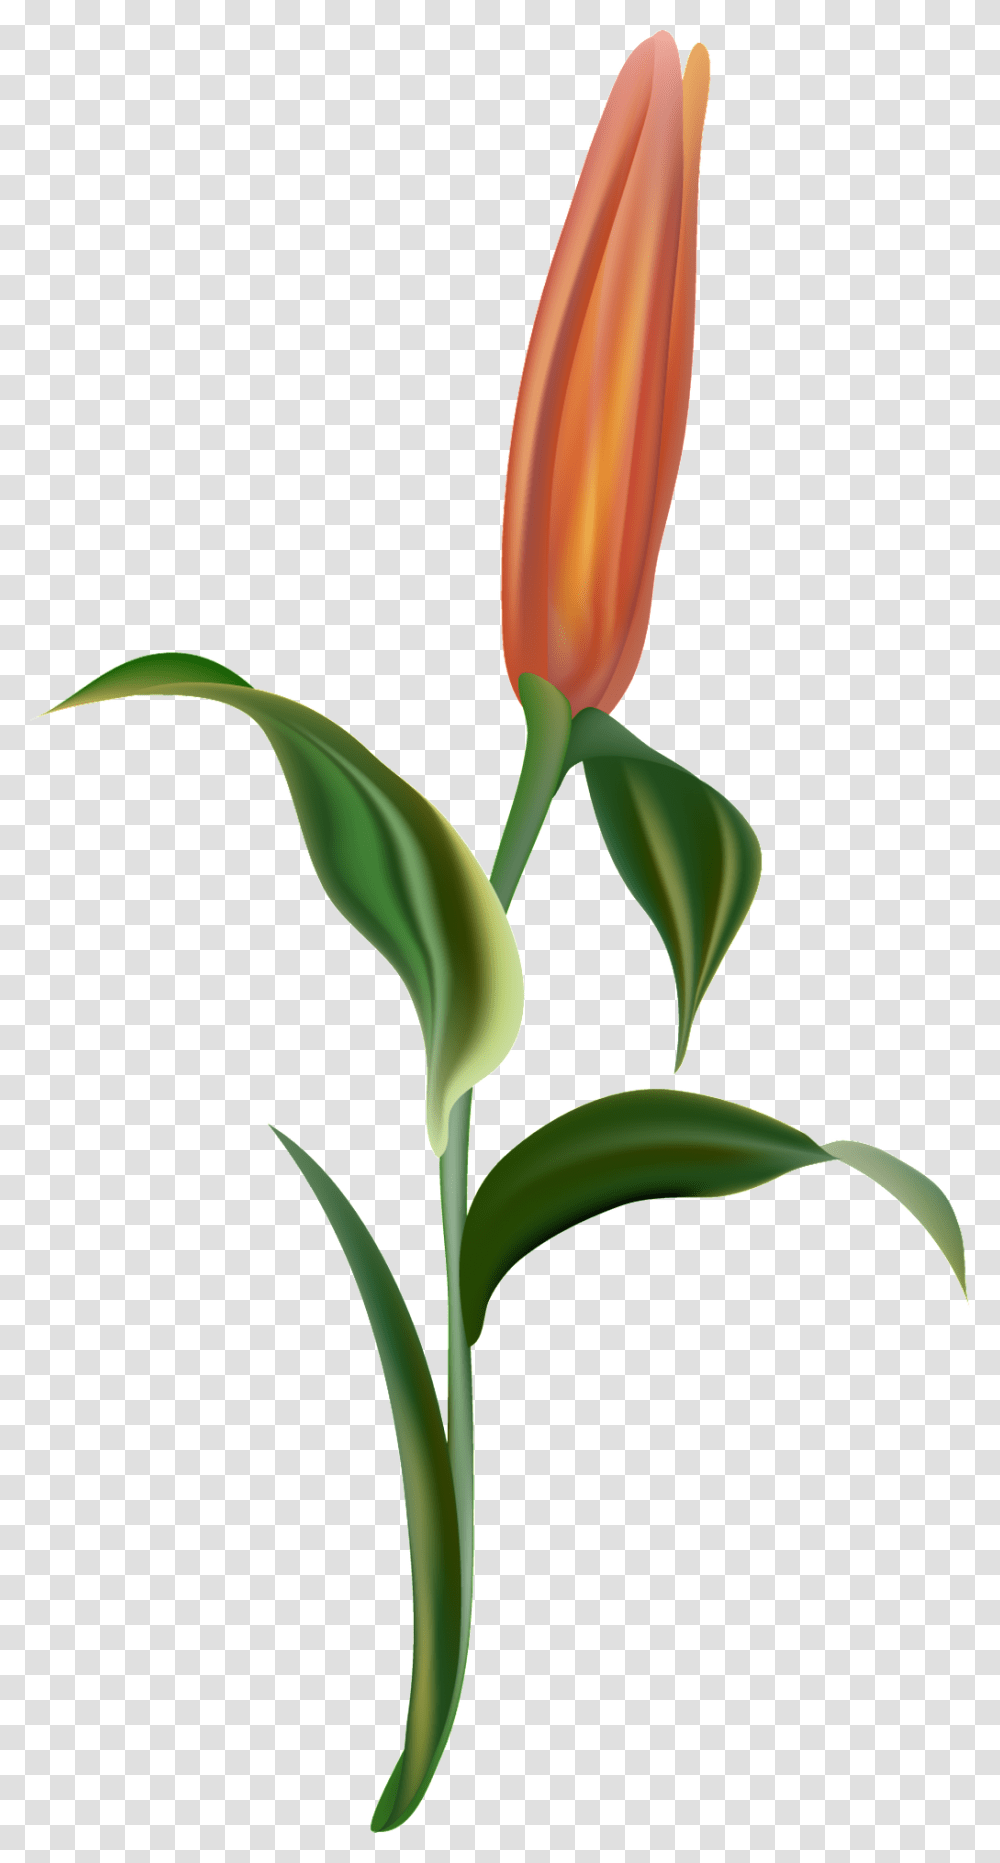 Orange Light Flower Branch Decorative Lady Tulip, Plant, Blossom, Vegetable, Food Transparent Png